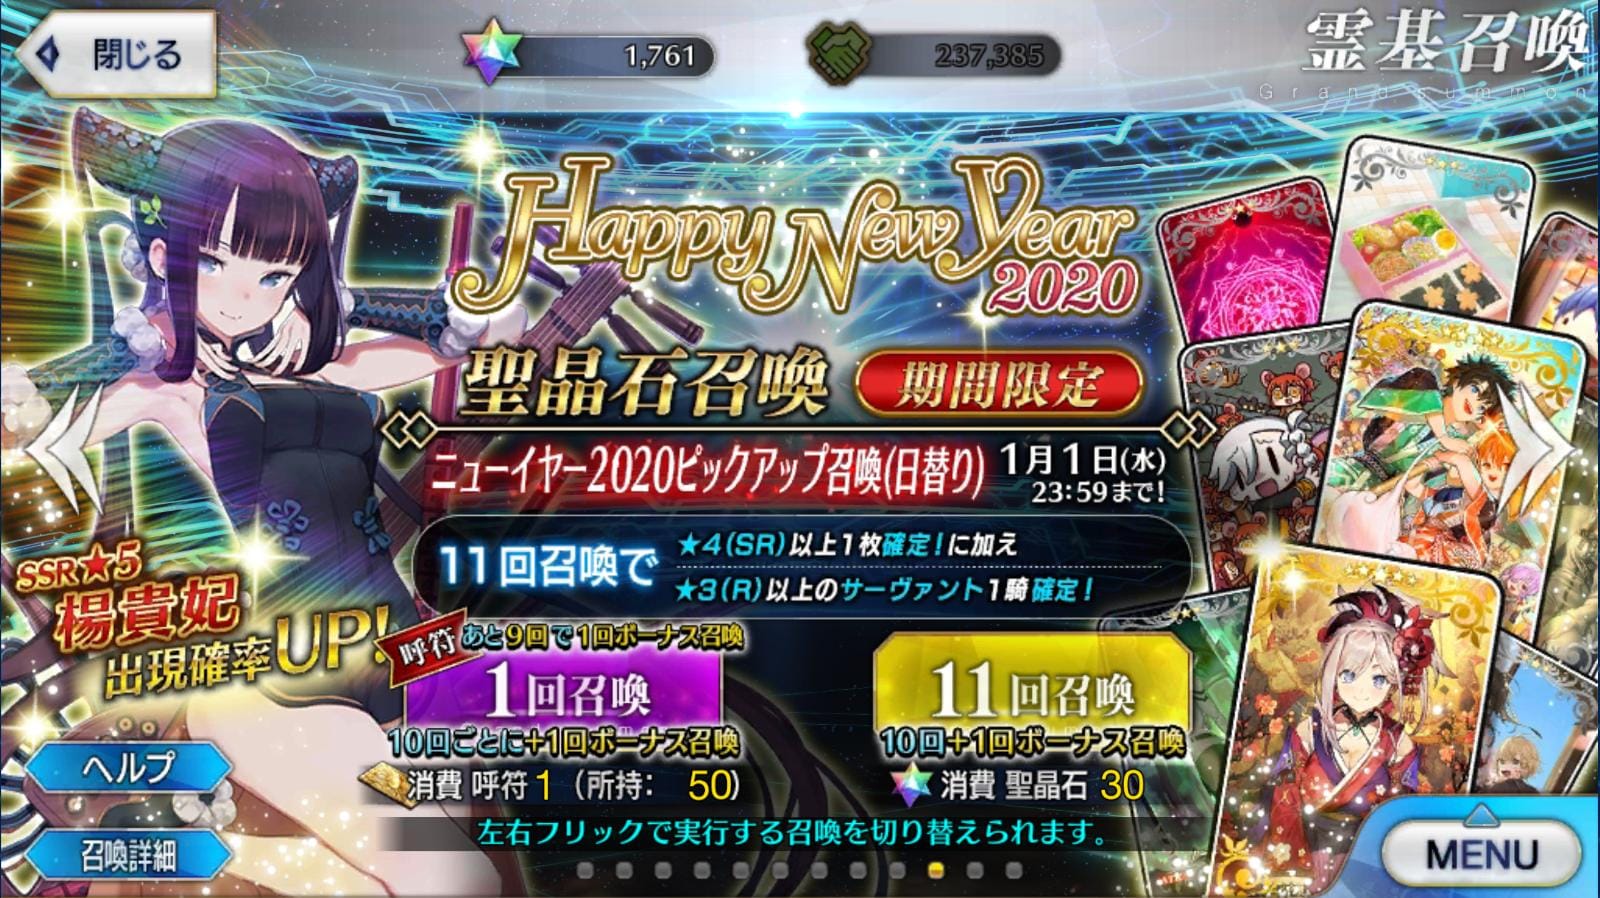 NA/ENG Fate Grand Order FGO 1 SSR Kama 0-100SQ starter account